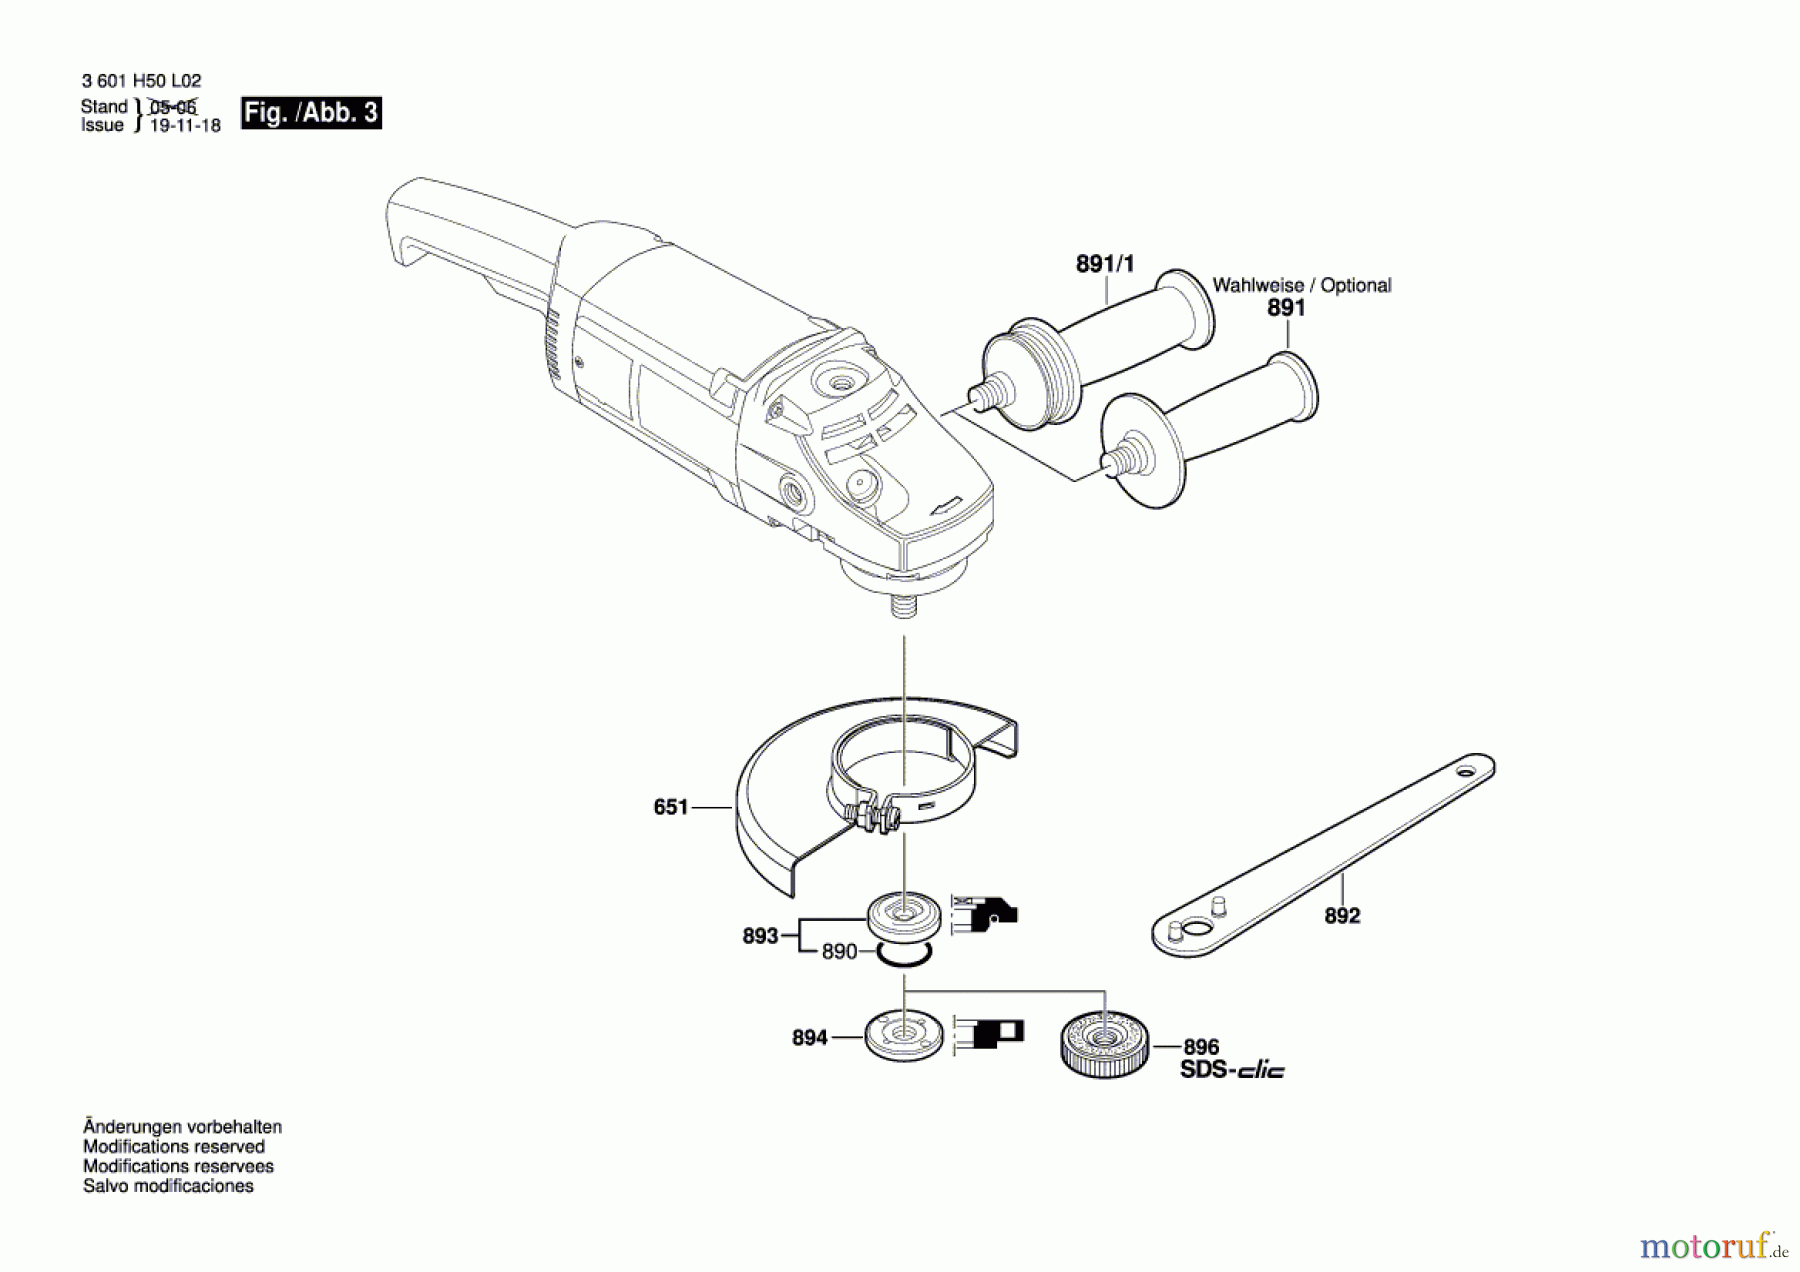  Bosch Werkzeug Winkelschleifer GWS 20-180 H Seite 3